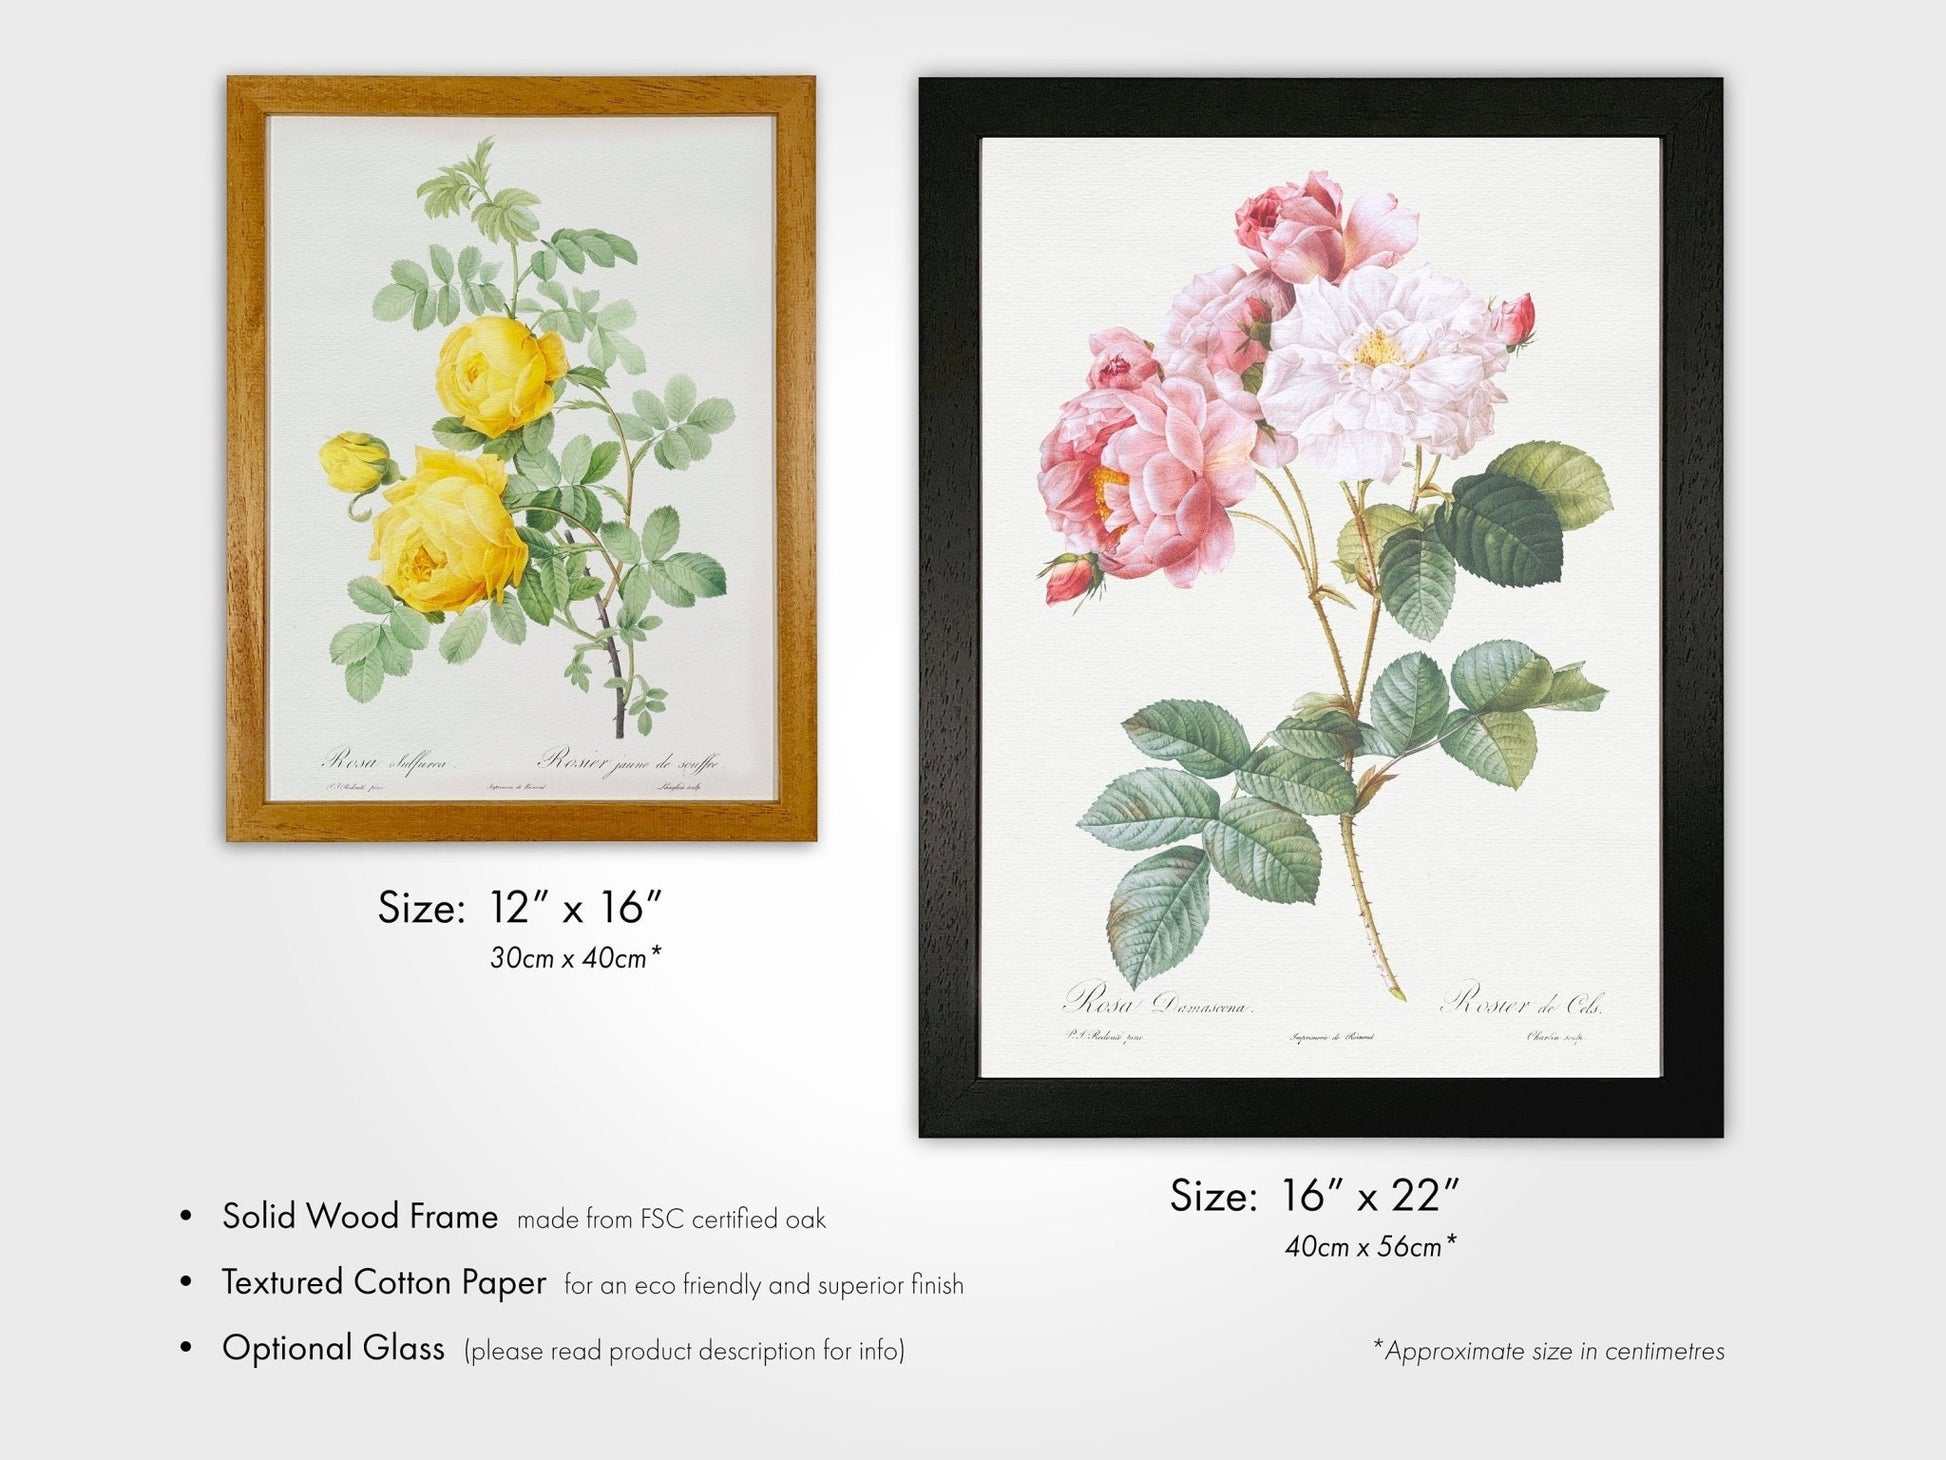 Set of 3 Fruit Prints by Pierre - Joseph Redouté (Raphael of Flowers) - Pathos Studio - Art Print Sets